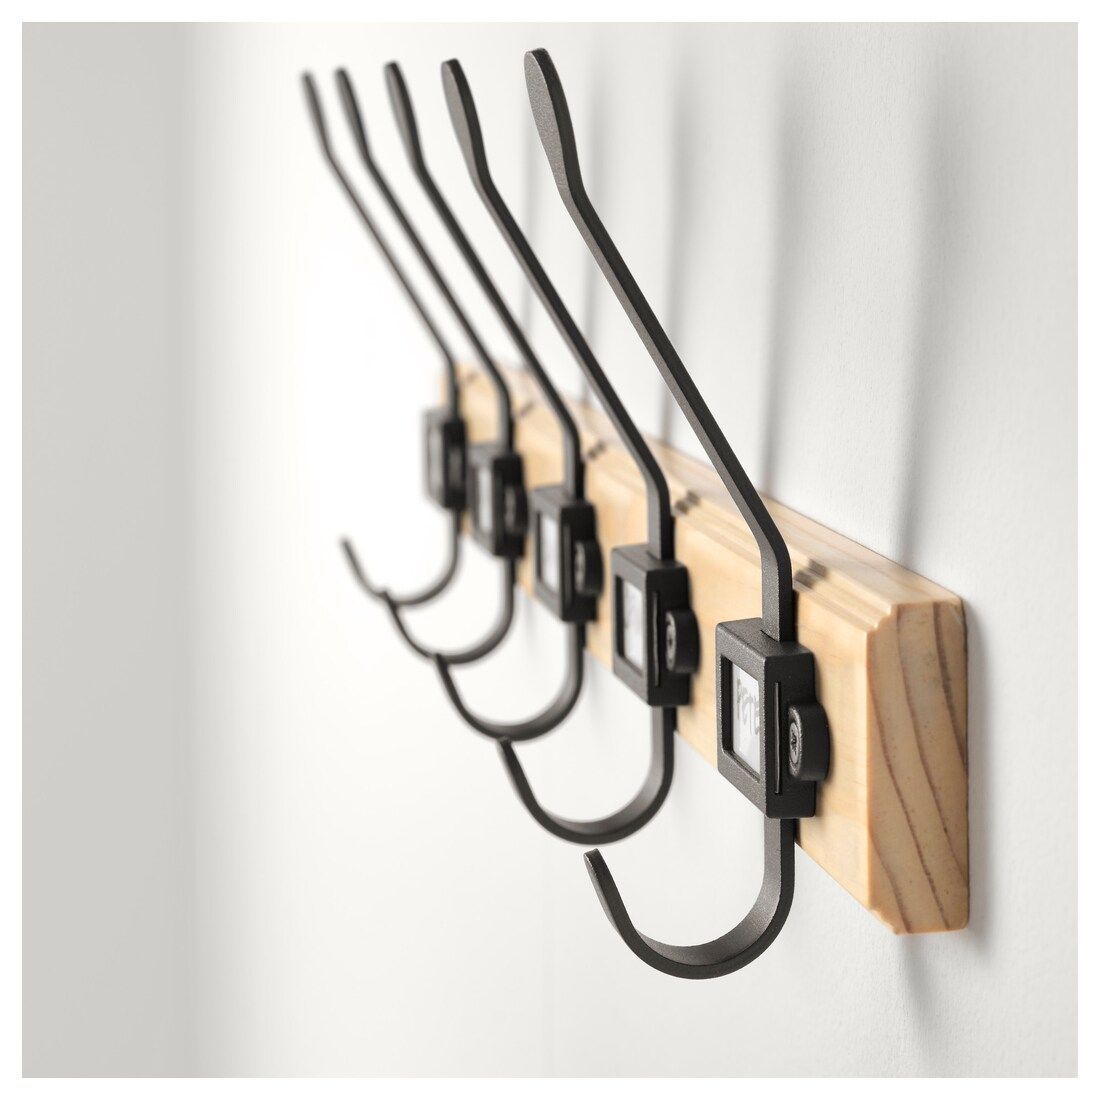 IKEA - KARTOTEK Rack with 5 hooks, pine, gray -   18 room decor Ikea hooks ideas